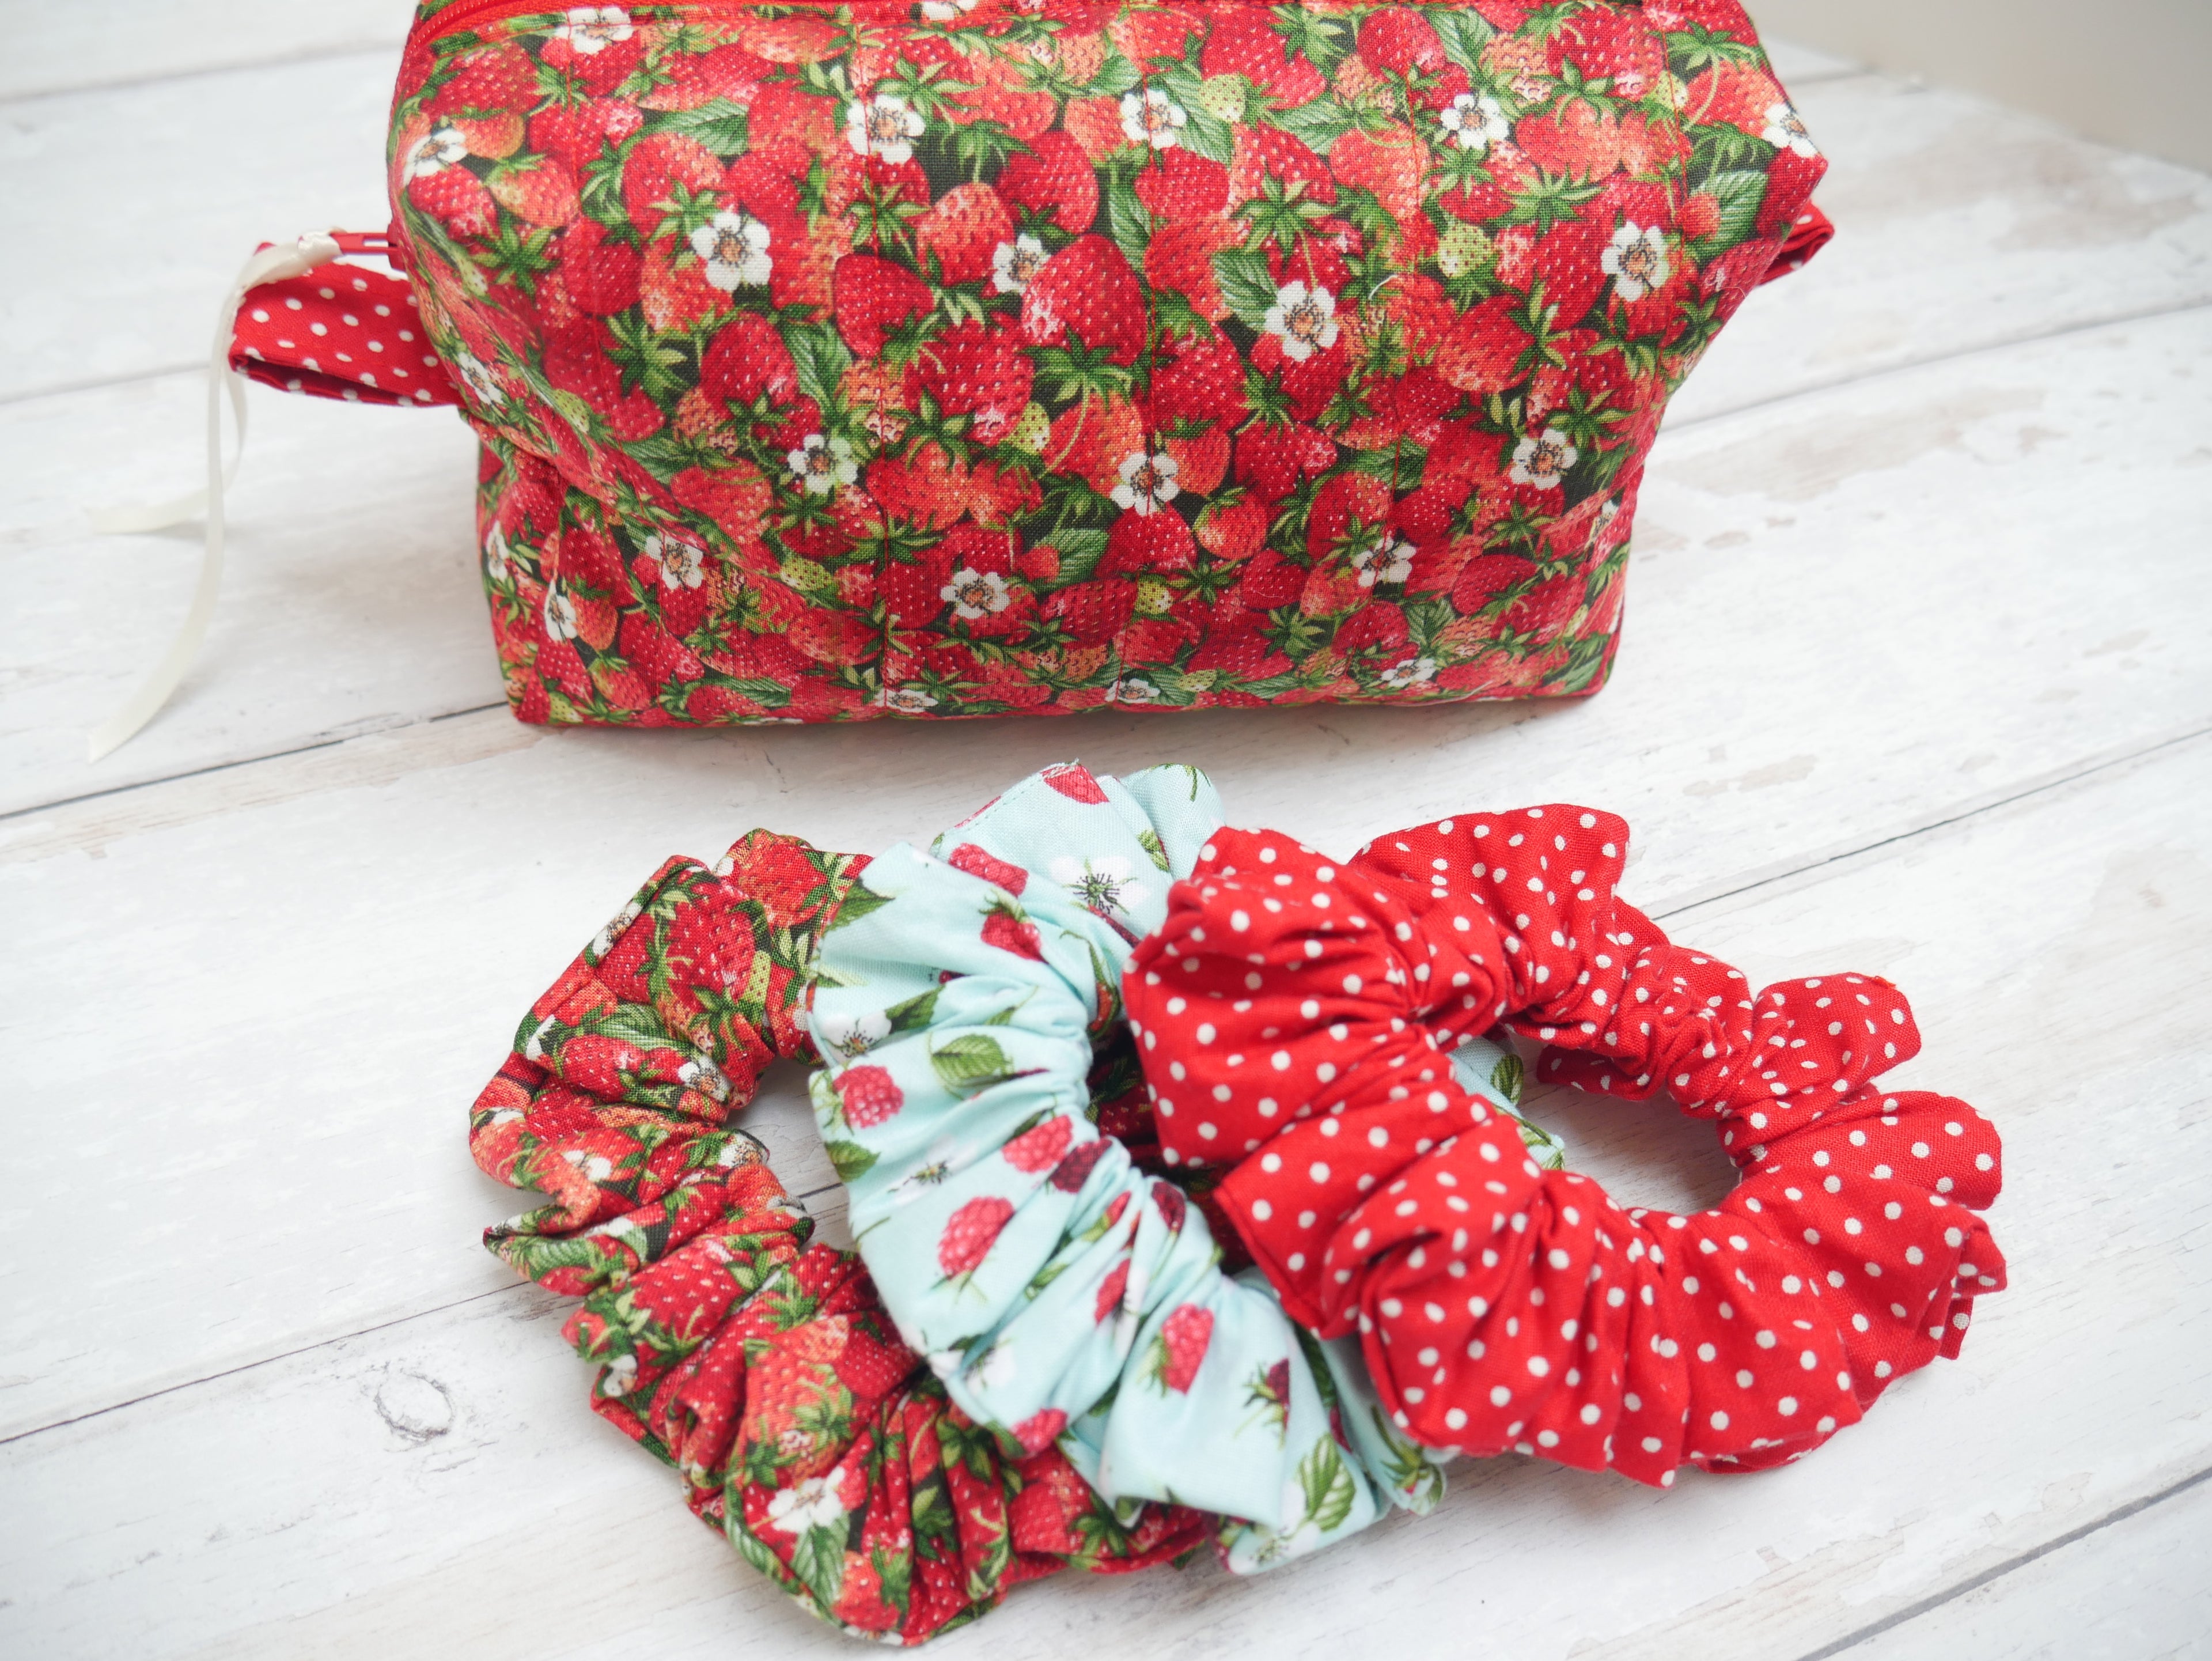 Strawberries Boxed Make-Up Bag Kit-Sewing Kit-Flying Bobbins Haberdashery